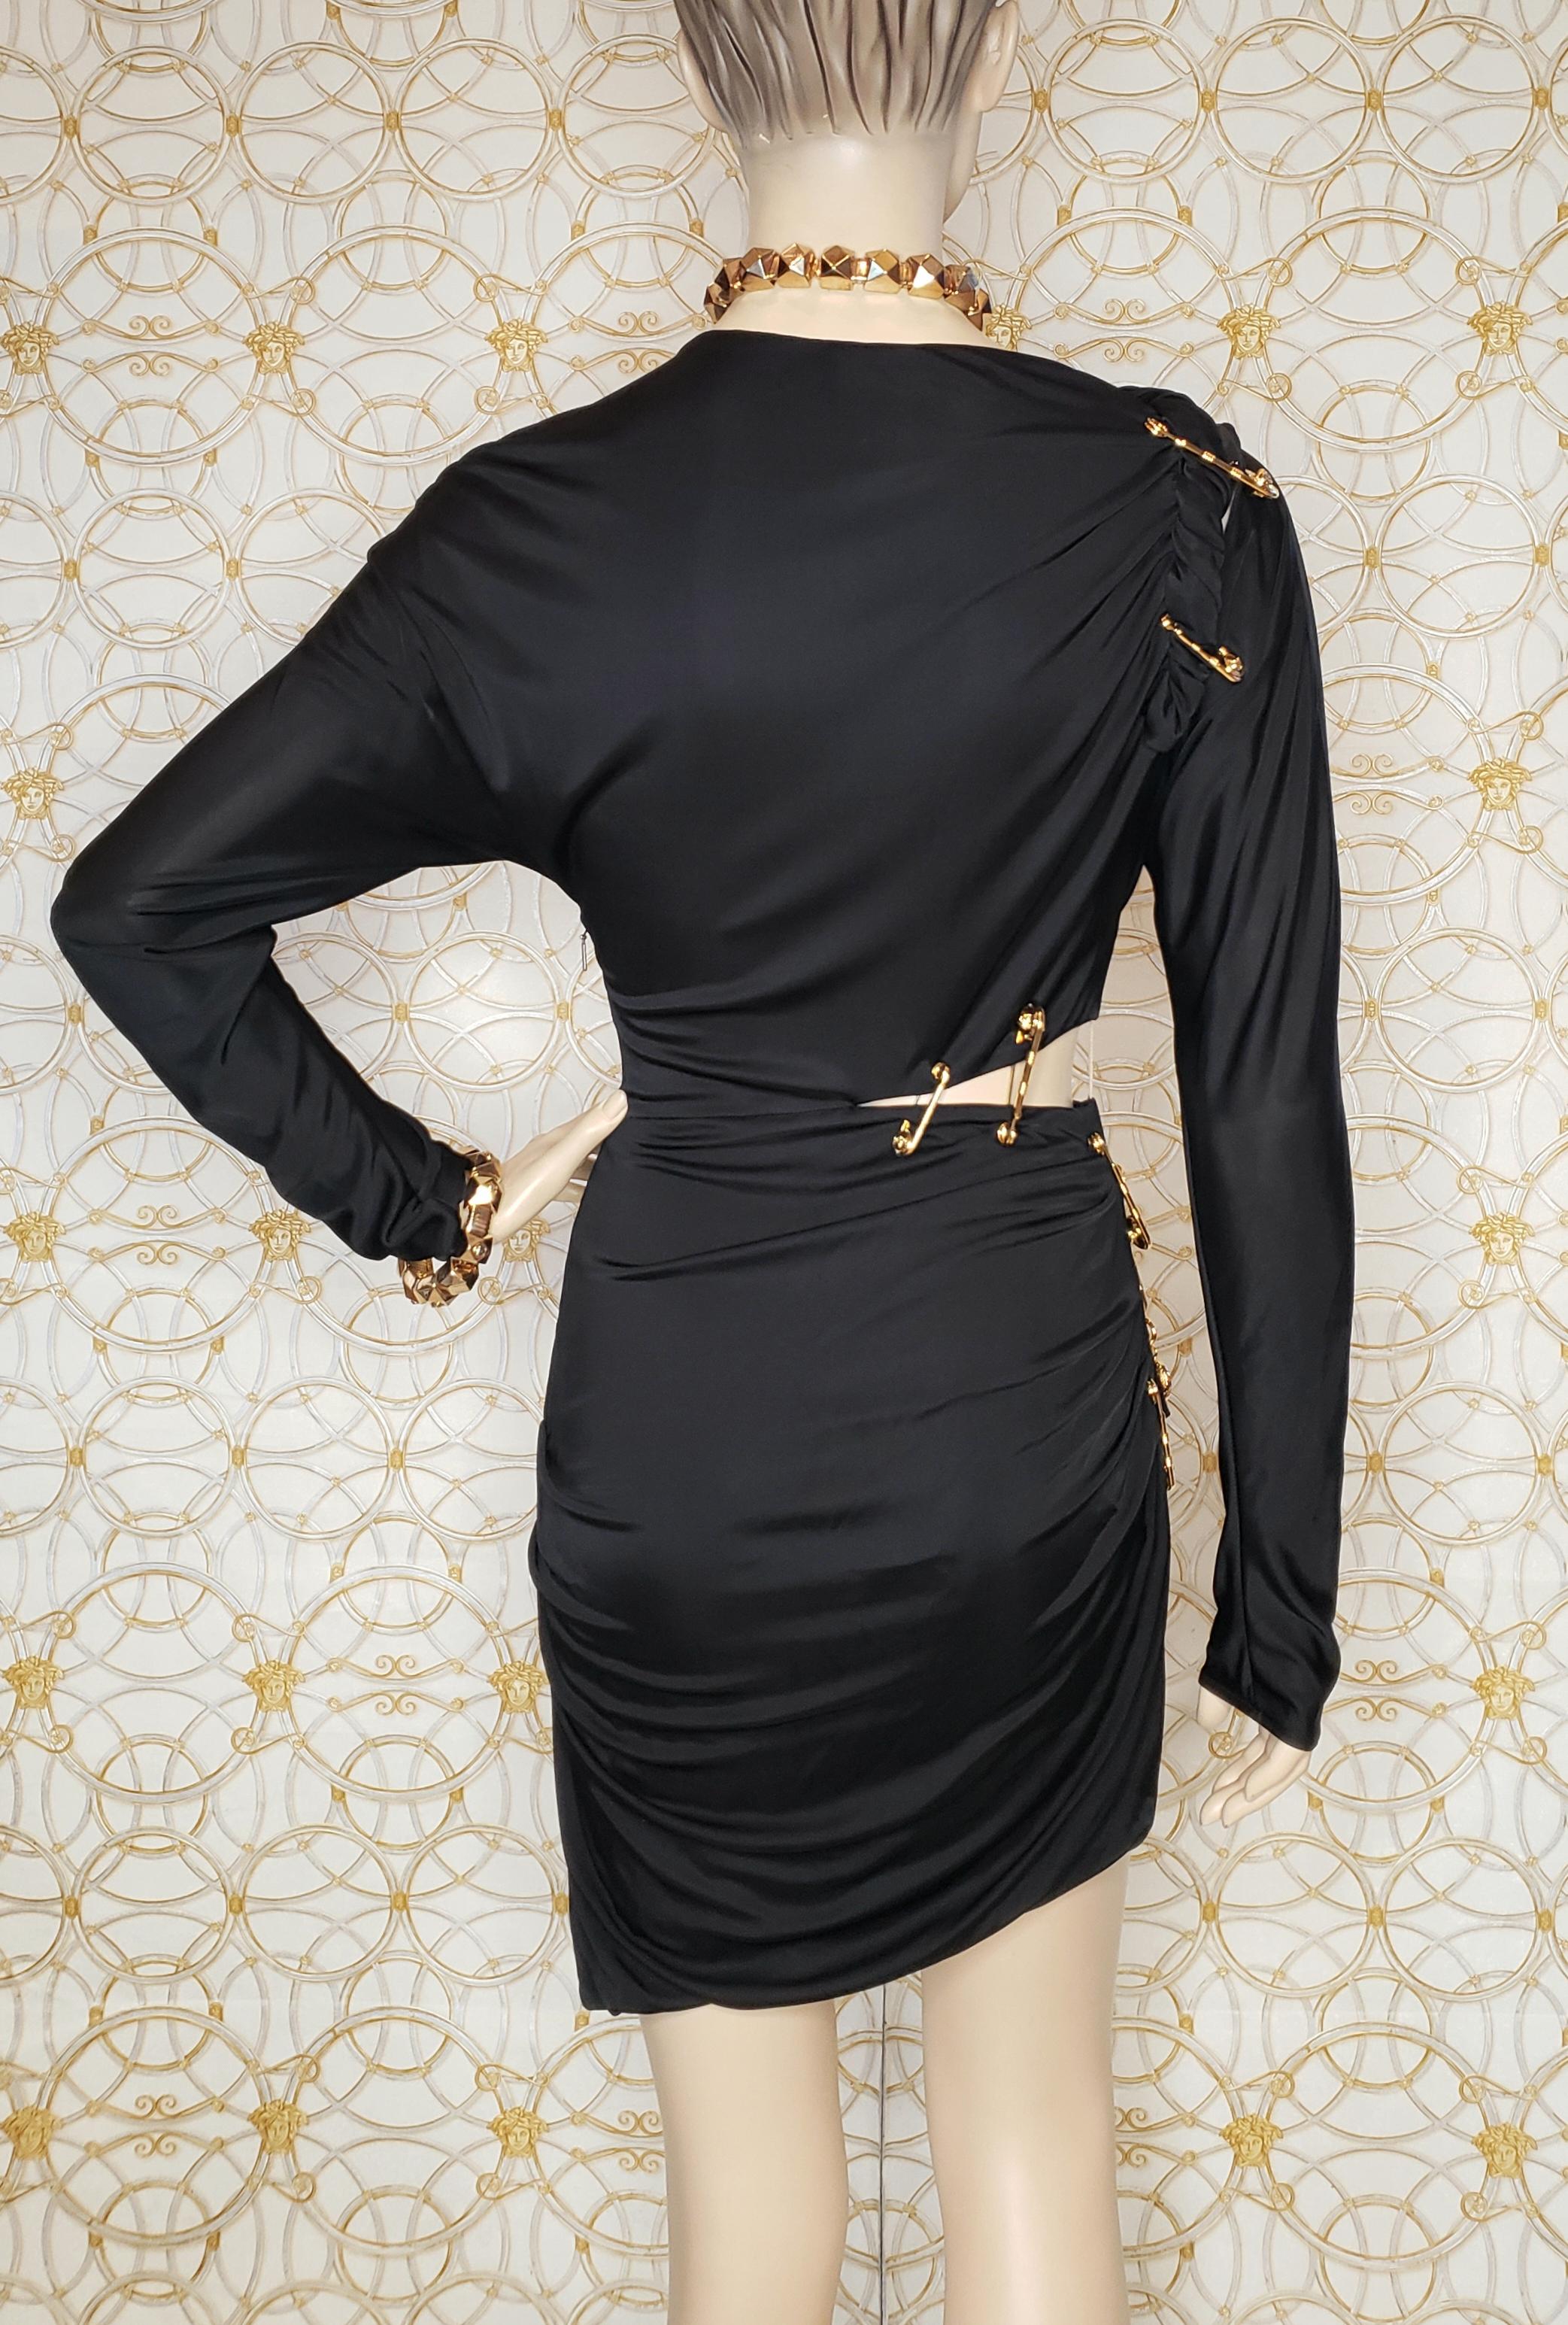  F/2019 look # 26 BLACK PIN UP KNIT COCKTAIL MINI Dress, IT 40 - US 4 - 6 1